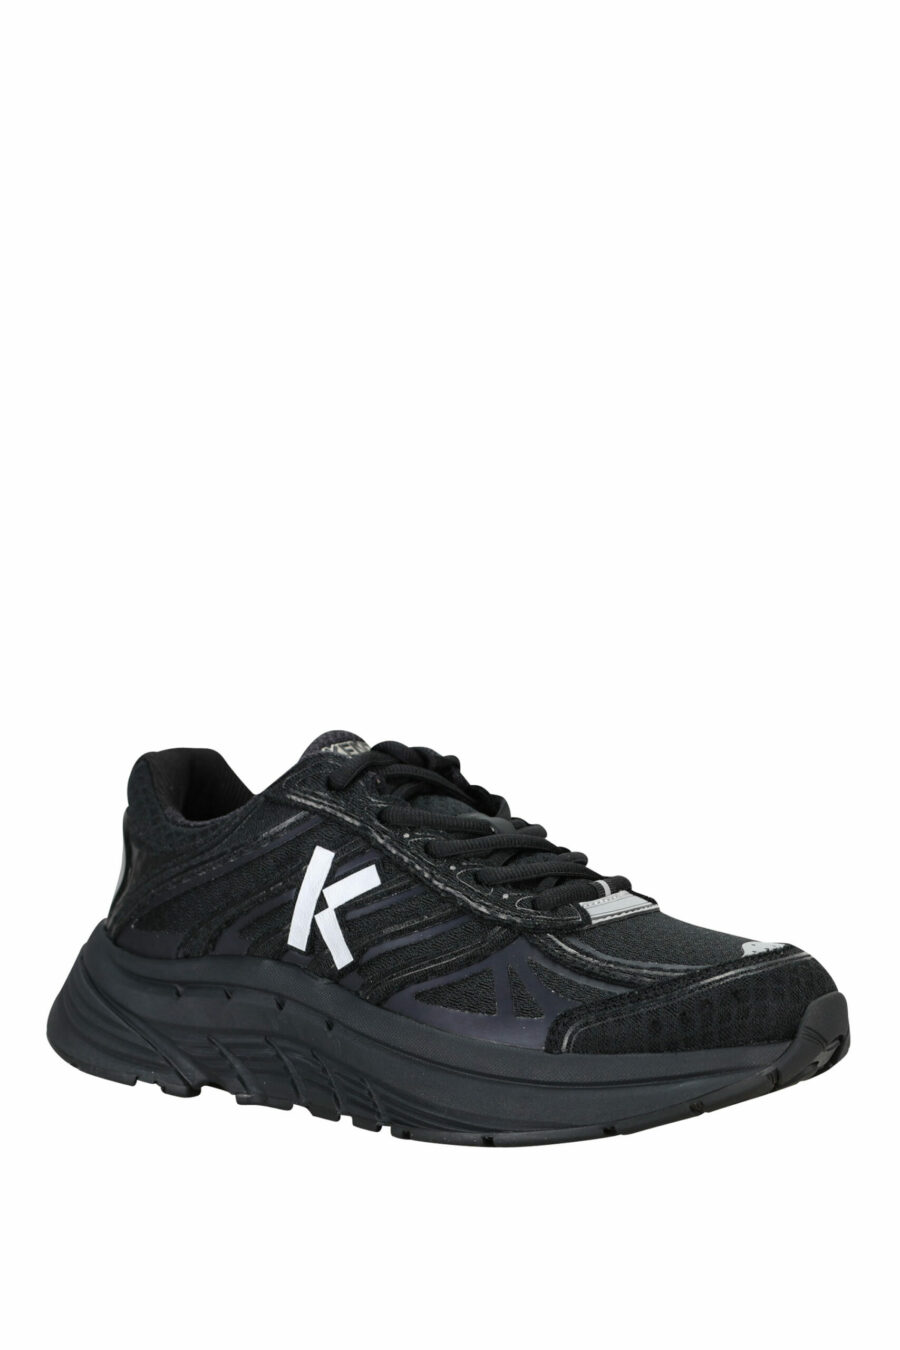 Zapatillas negras "kenzo tech runner" con minilogo blanco - 3612230549722 1 scaled